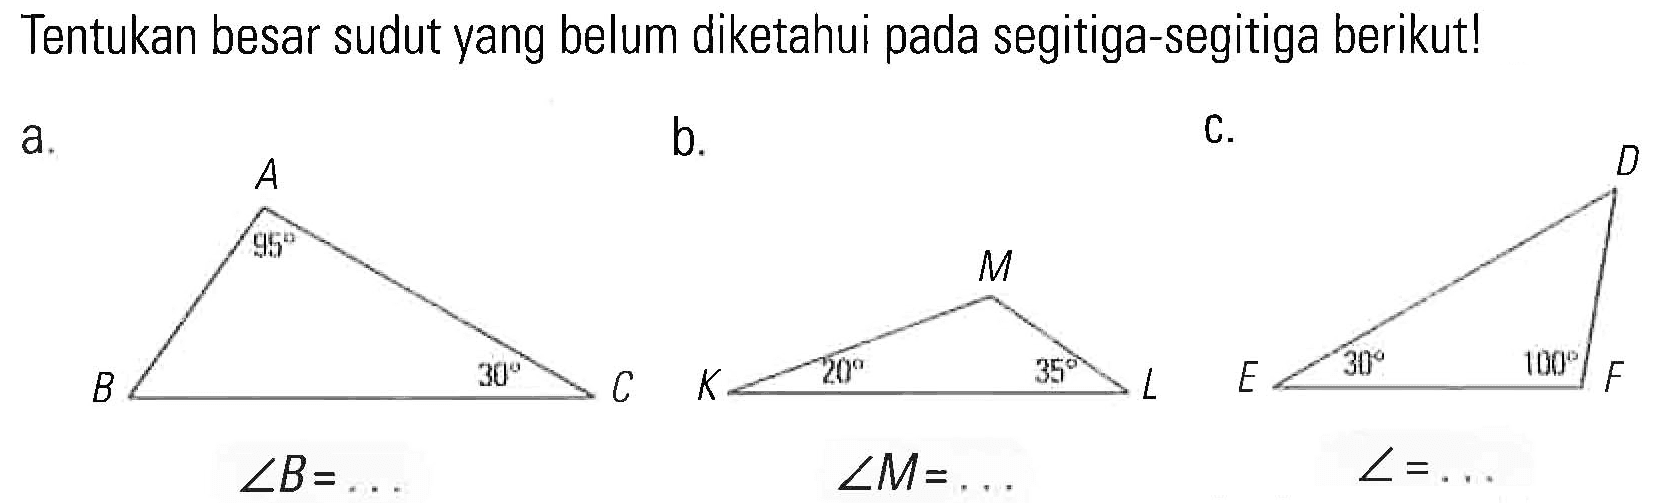 Tentukan besar sudut yang belum diketahui pada segitiga-segitiga berikut! 30 20 35 20 sudut B = ... sudut M = ...